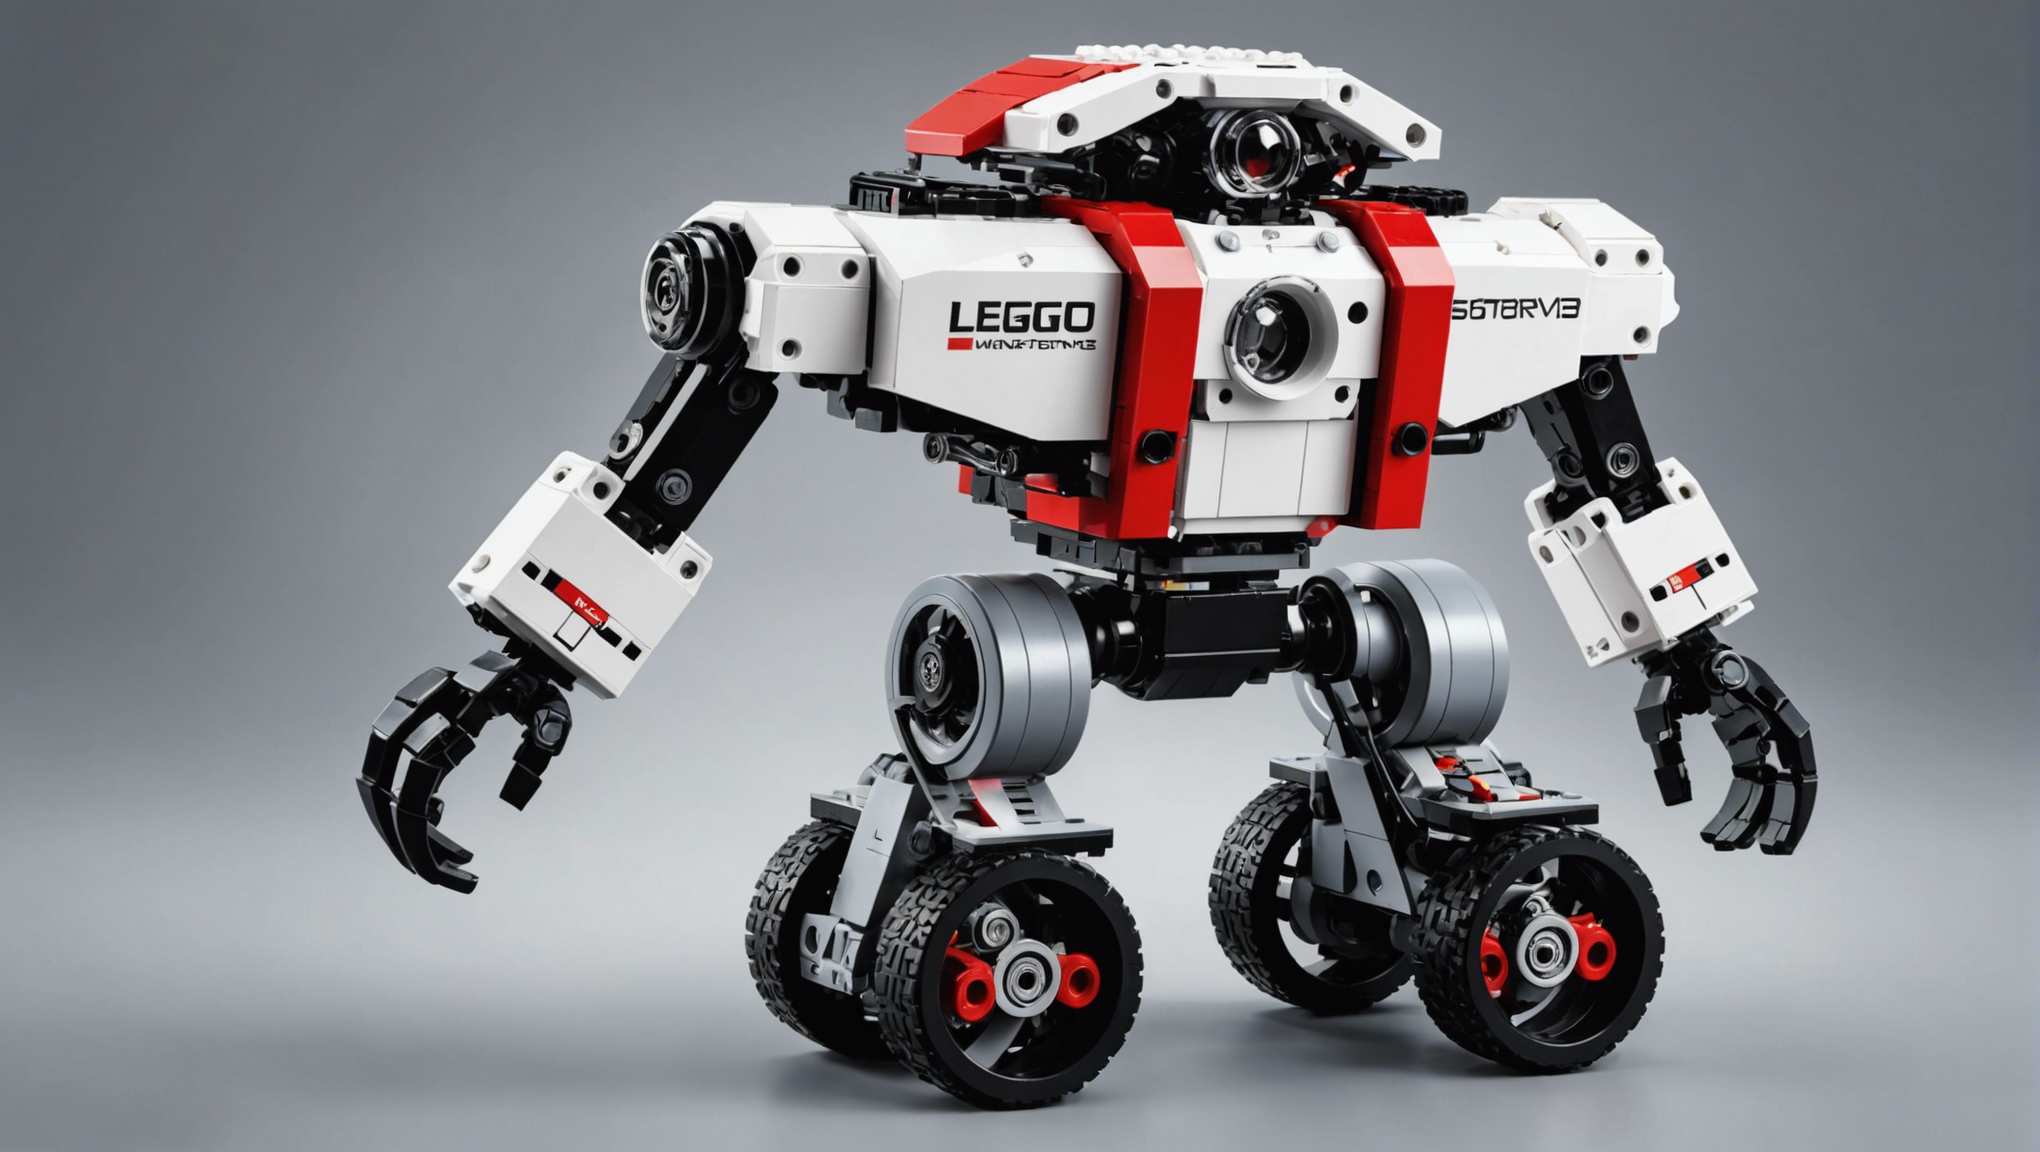 découvrez le robot programmable lego mindstorms ev3 disponible et en stock en france chez génération robots. commandez le vôtre dès aujourd'hui !